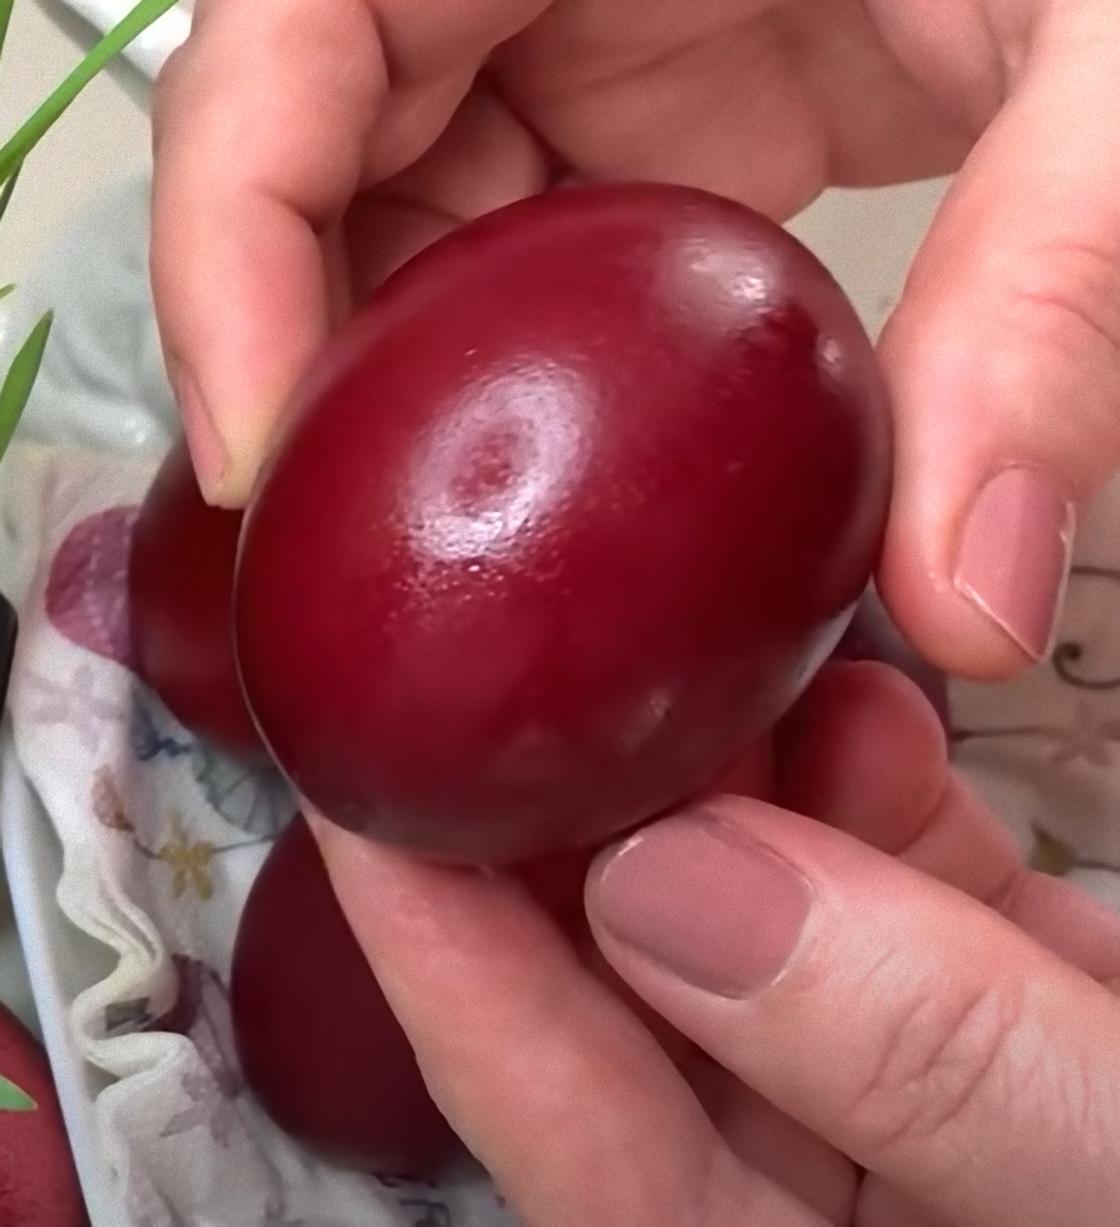 В руке держат яйцо, окрашенное в темно-вишневый цвет